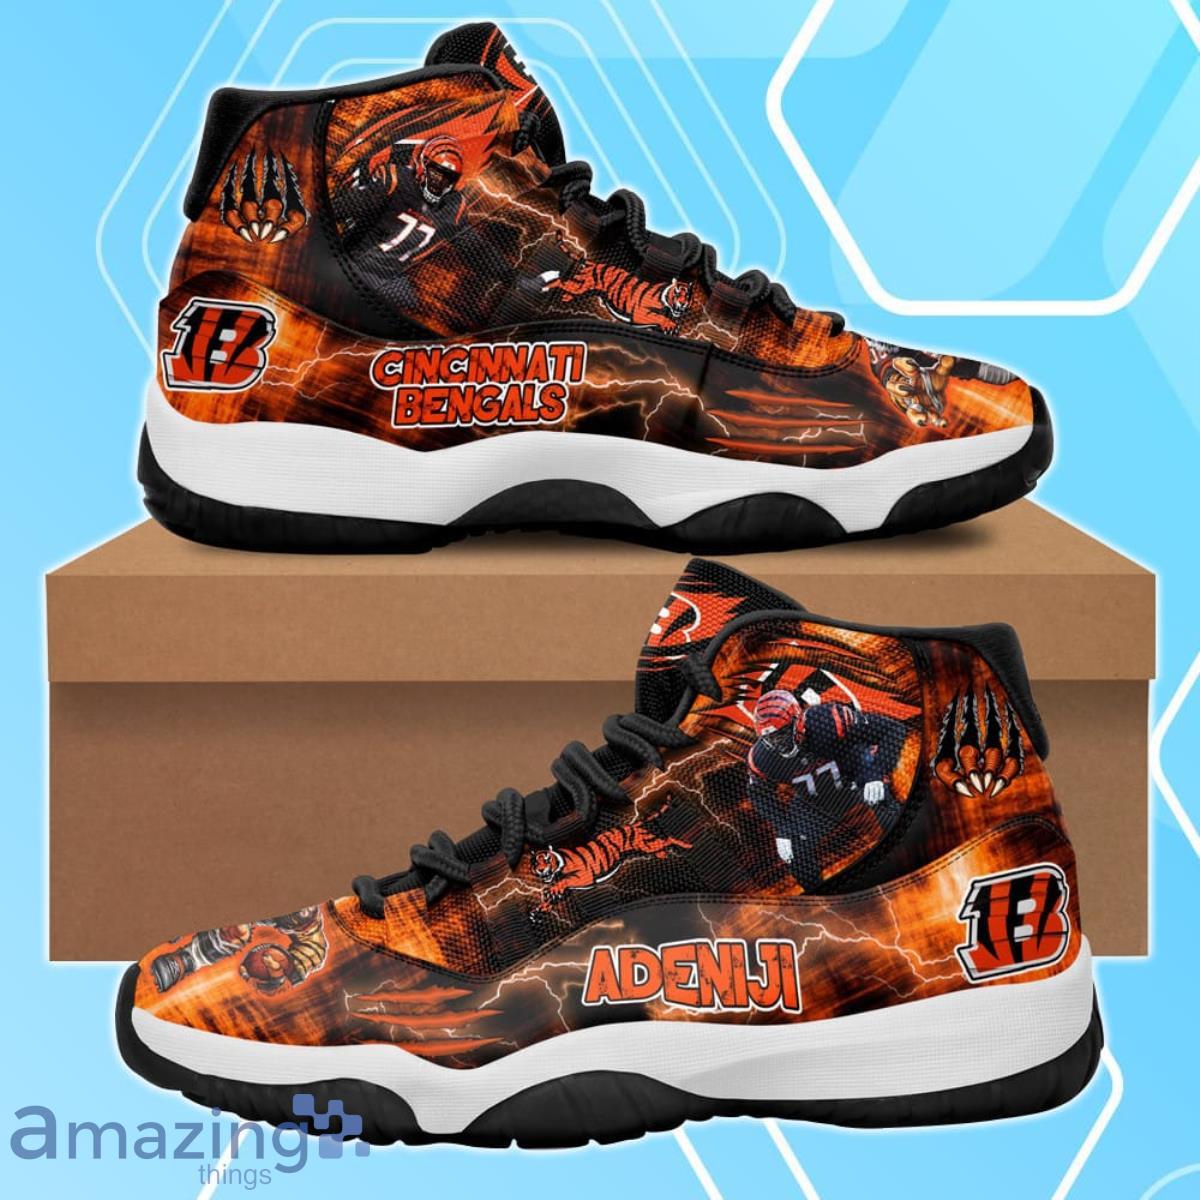 Cincinnati Bengals Hakeem Adeniji Air Jordan 11 Shoes For Men Women Product Photo 1